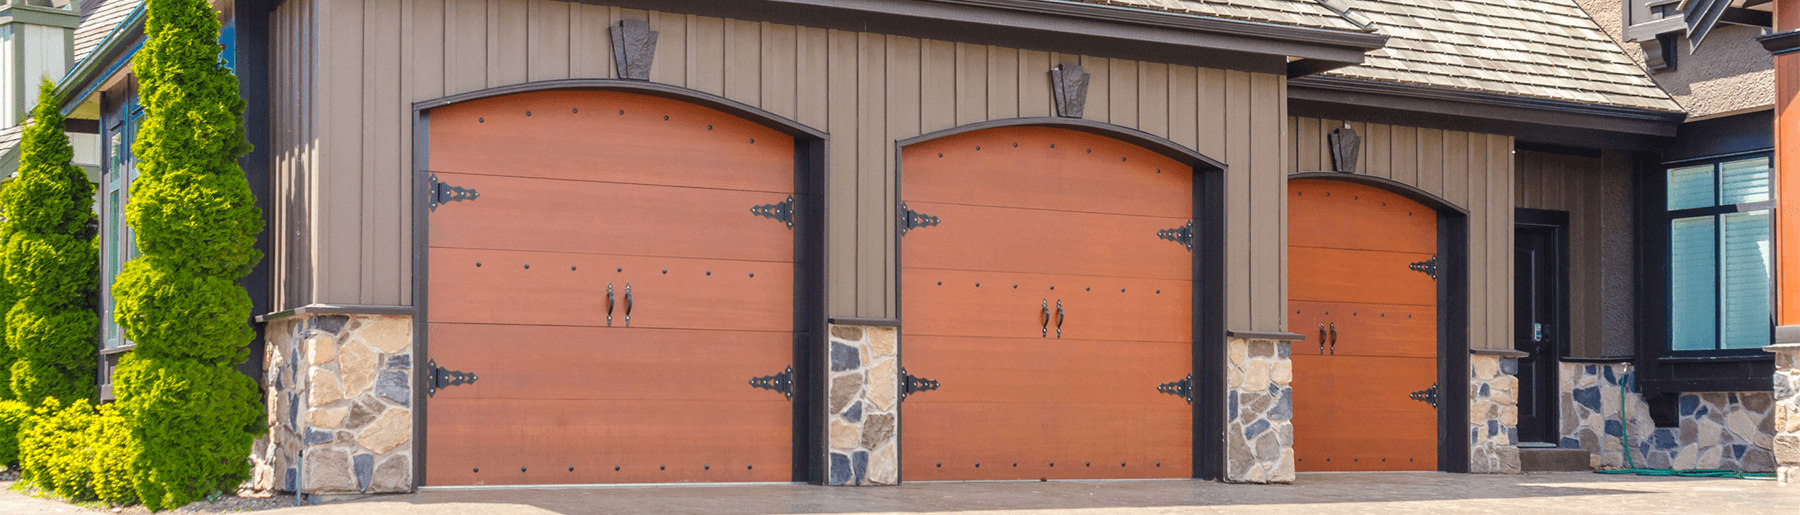 Commercial Garage Door Repair, Garage Door Opener Repair Duluth Mn